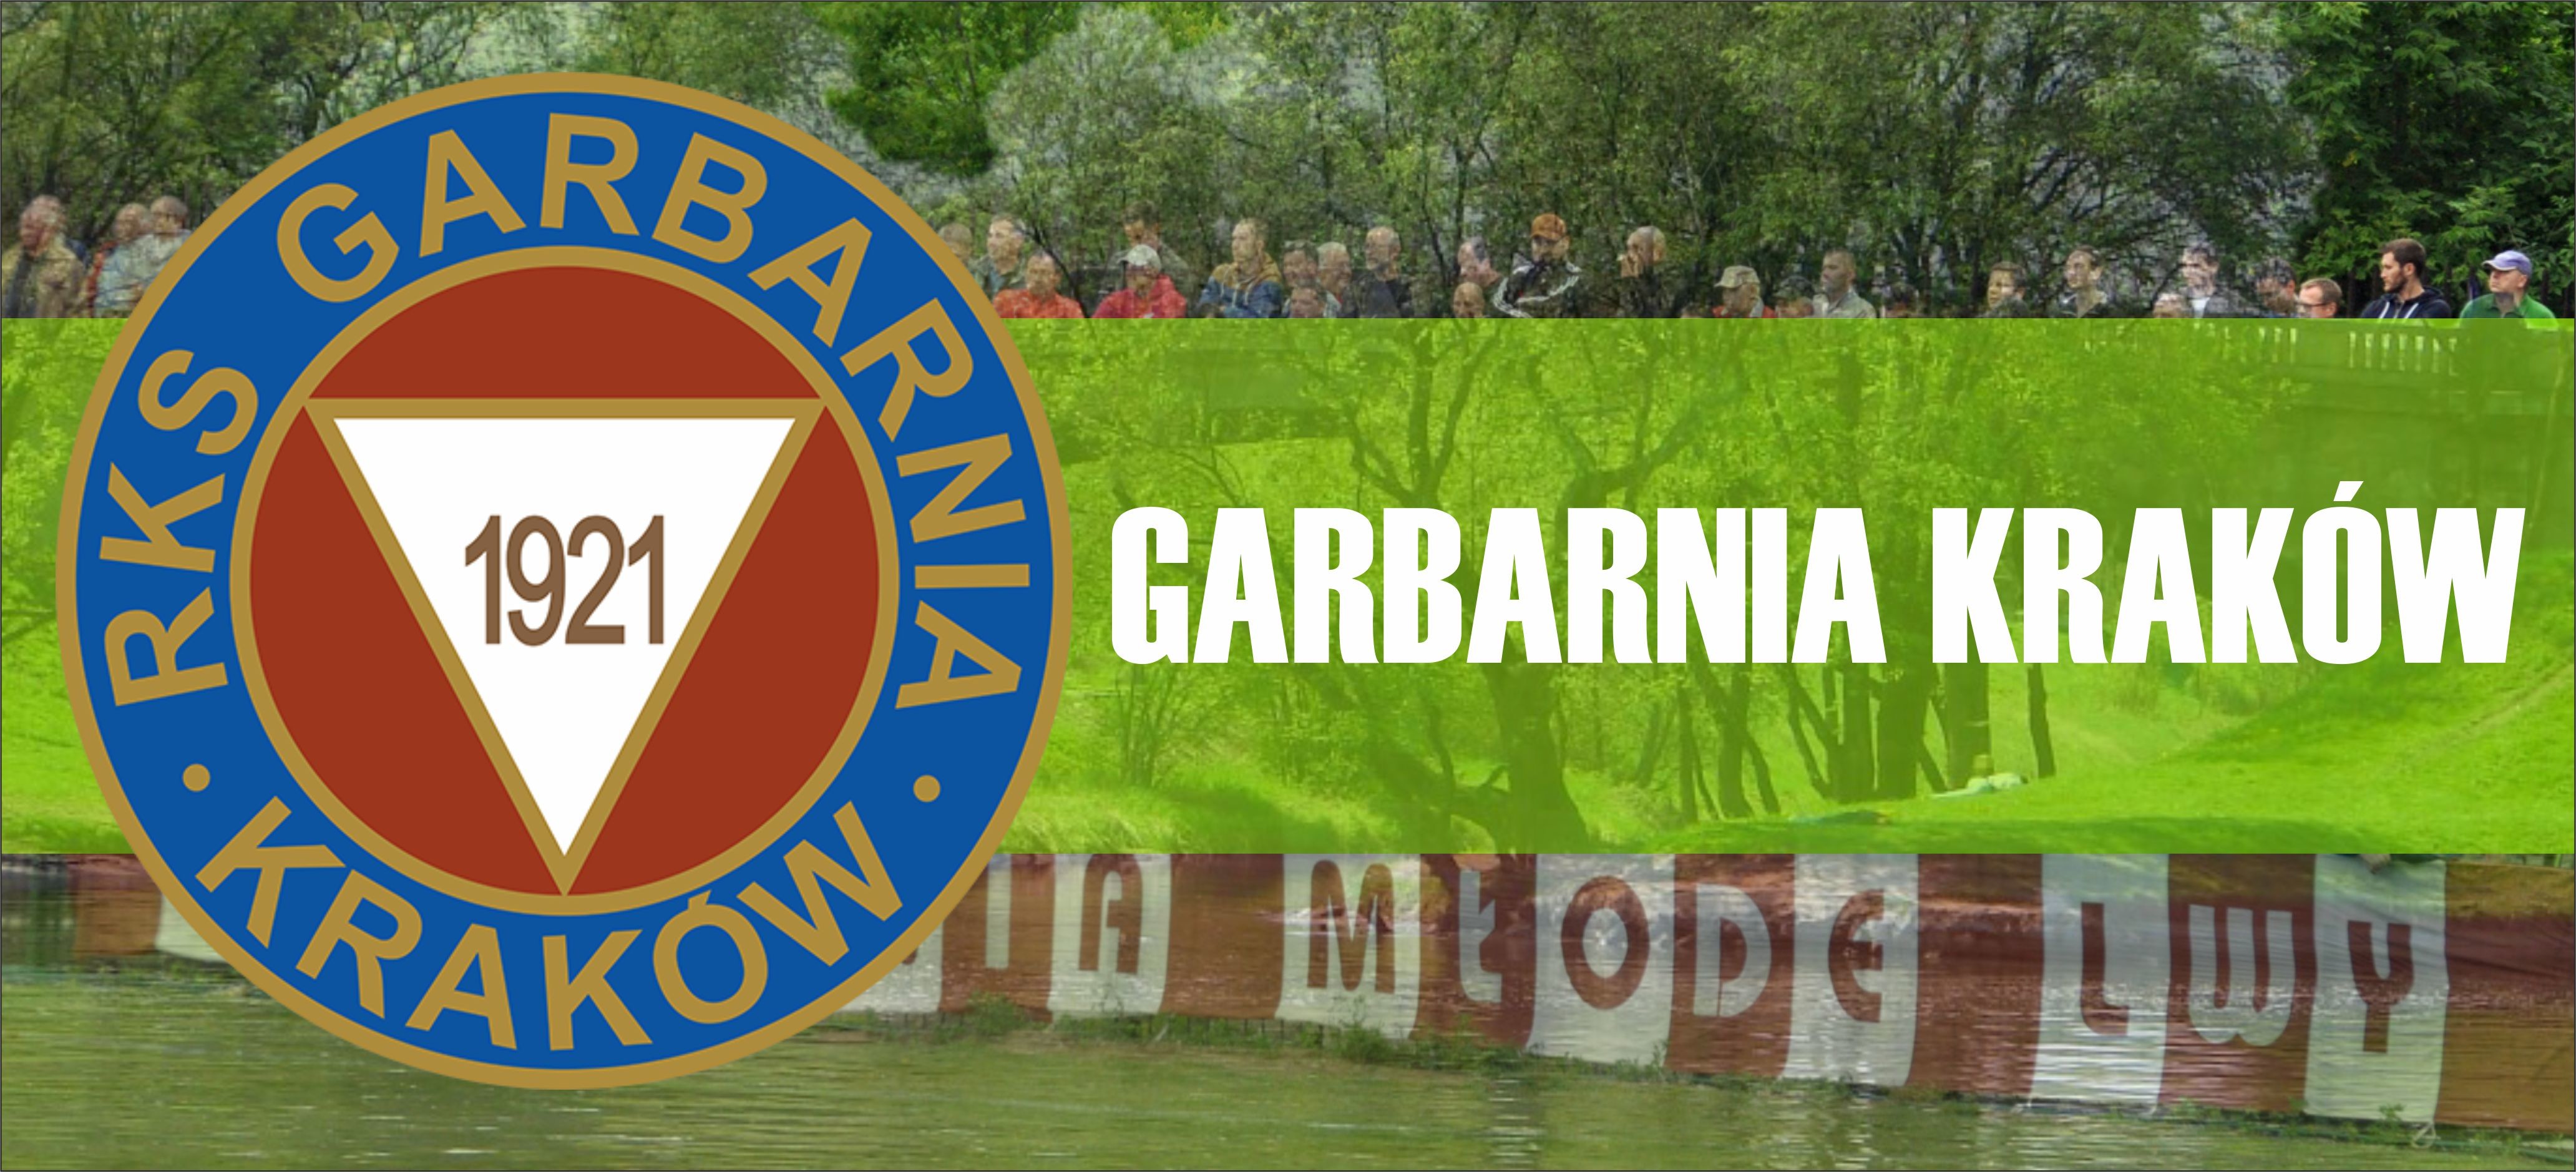 Garbarnia Kraków walczy o utrzymanie w I lidze